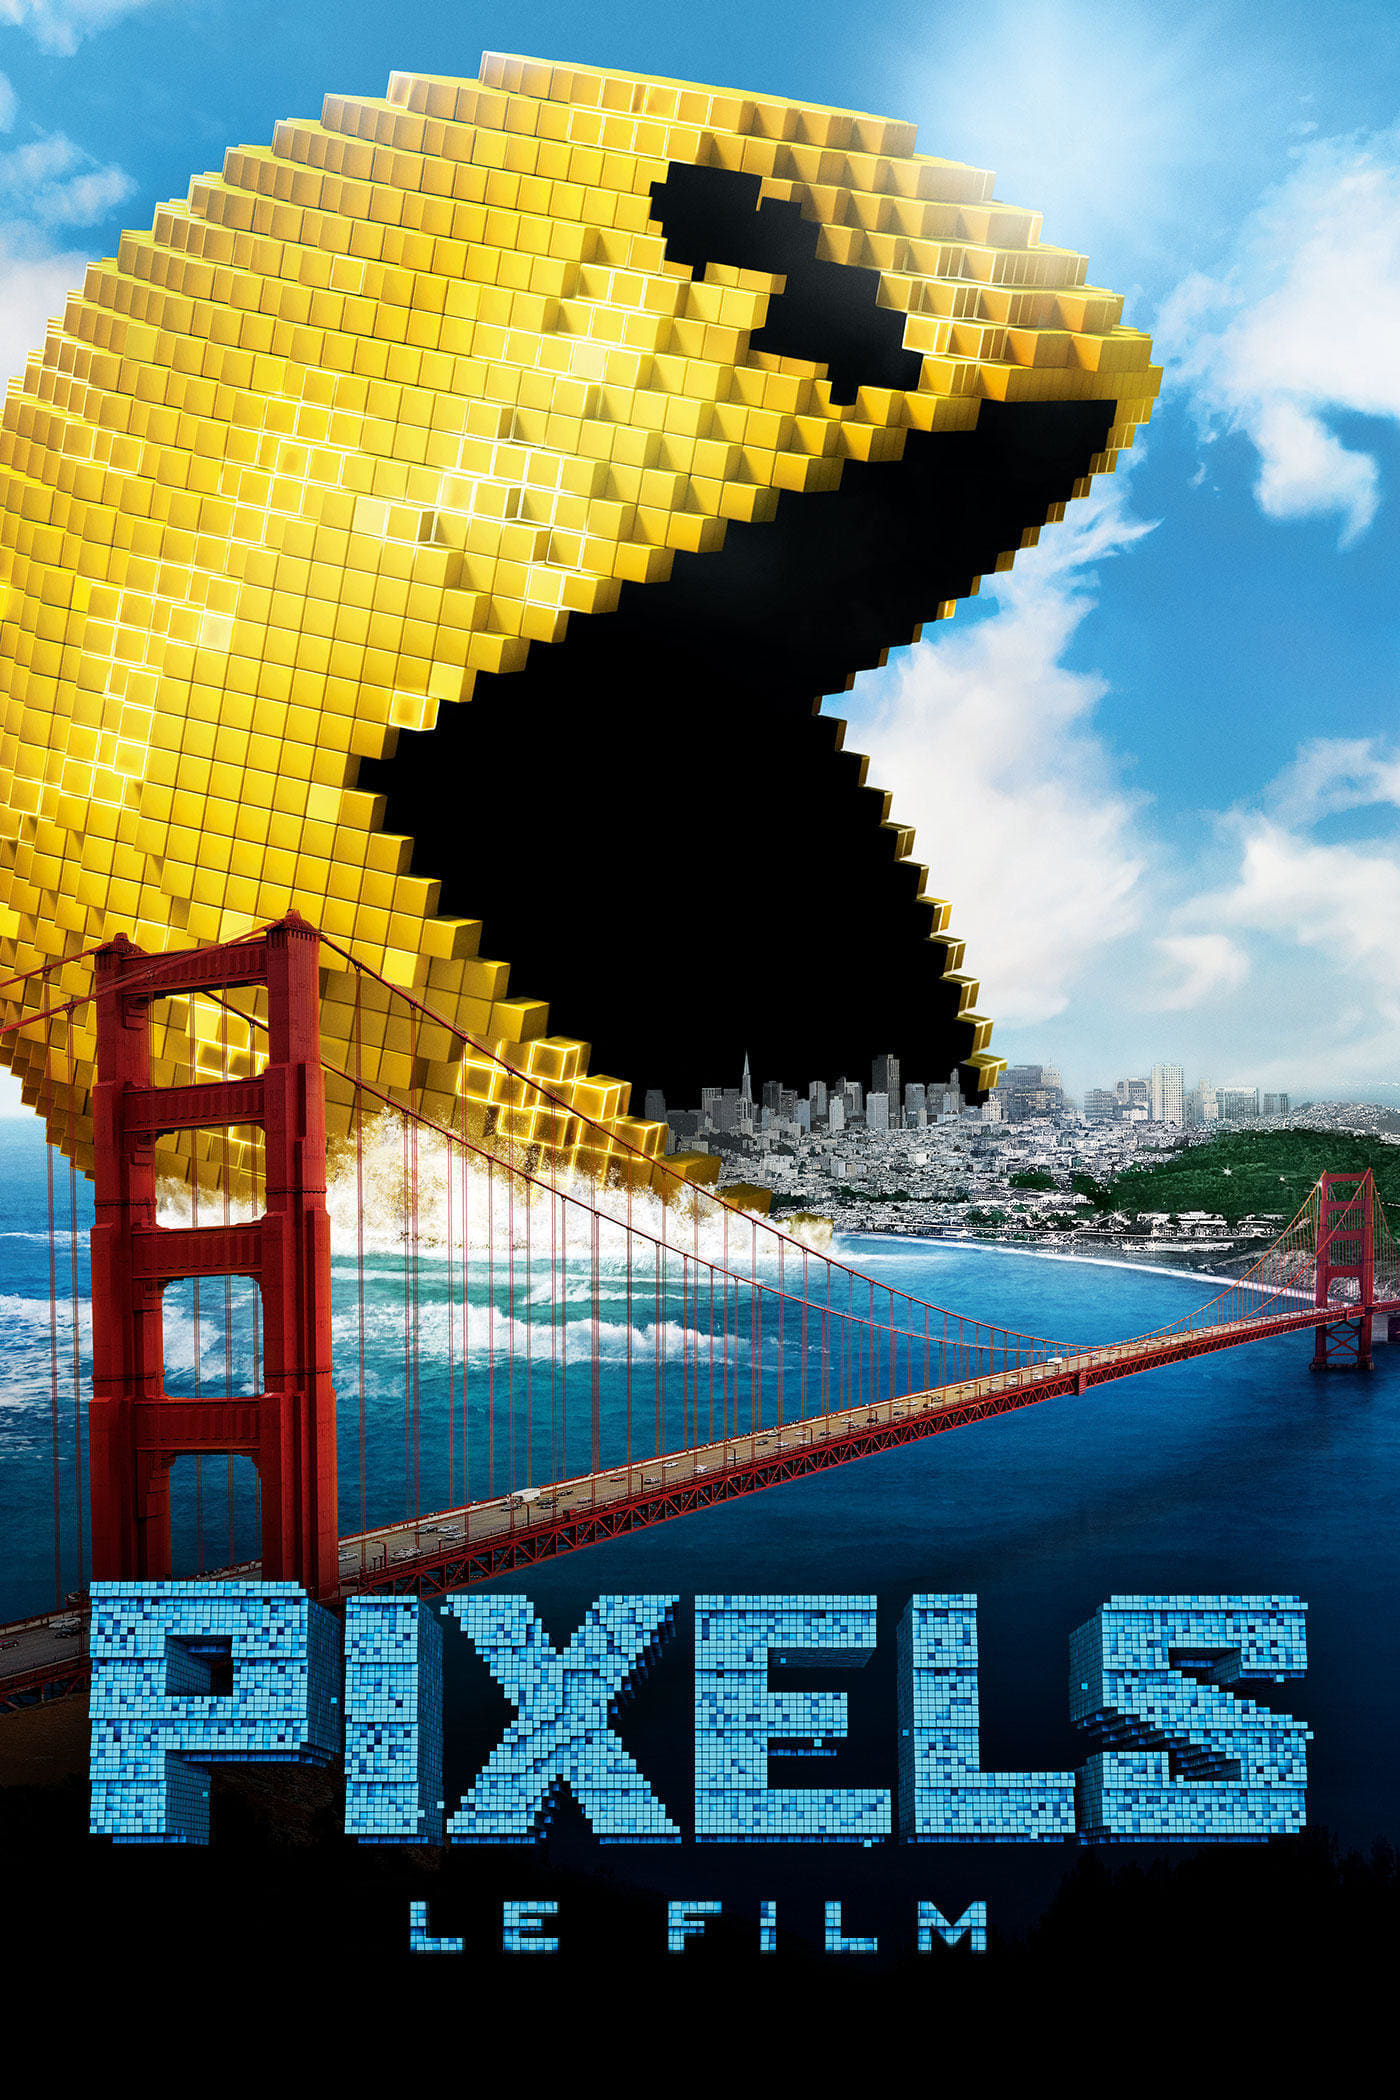 Affiche du film "Pixels"